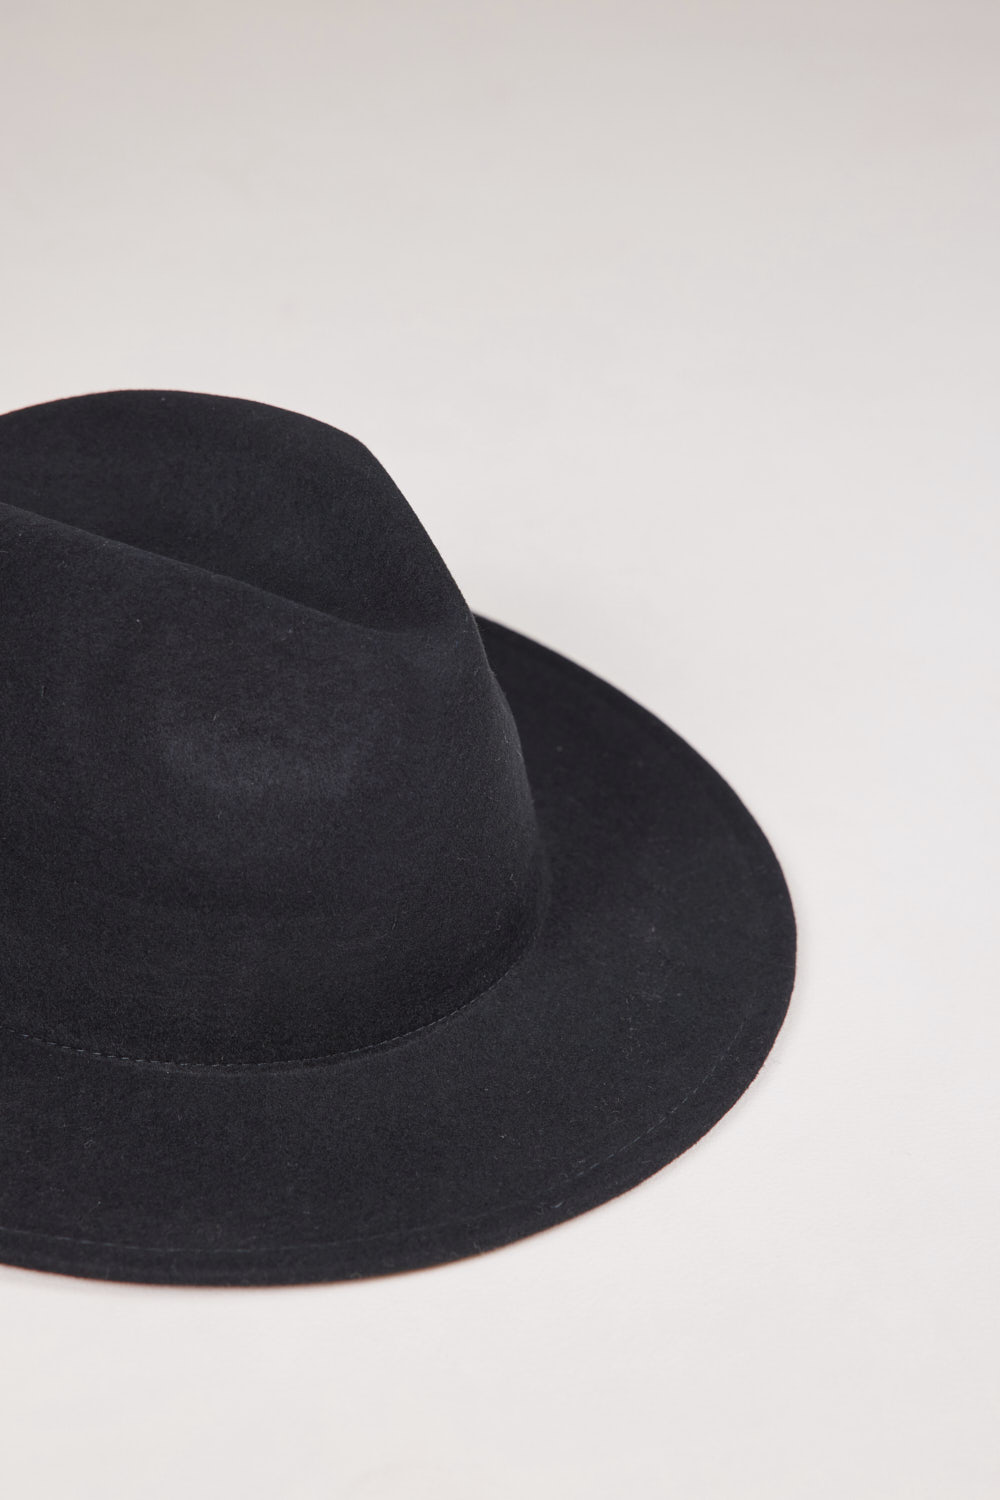 כובע לואיס שחור (4)